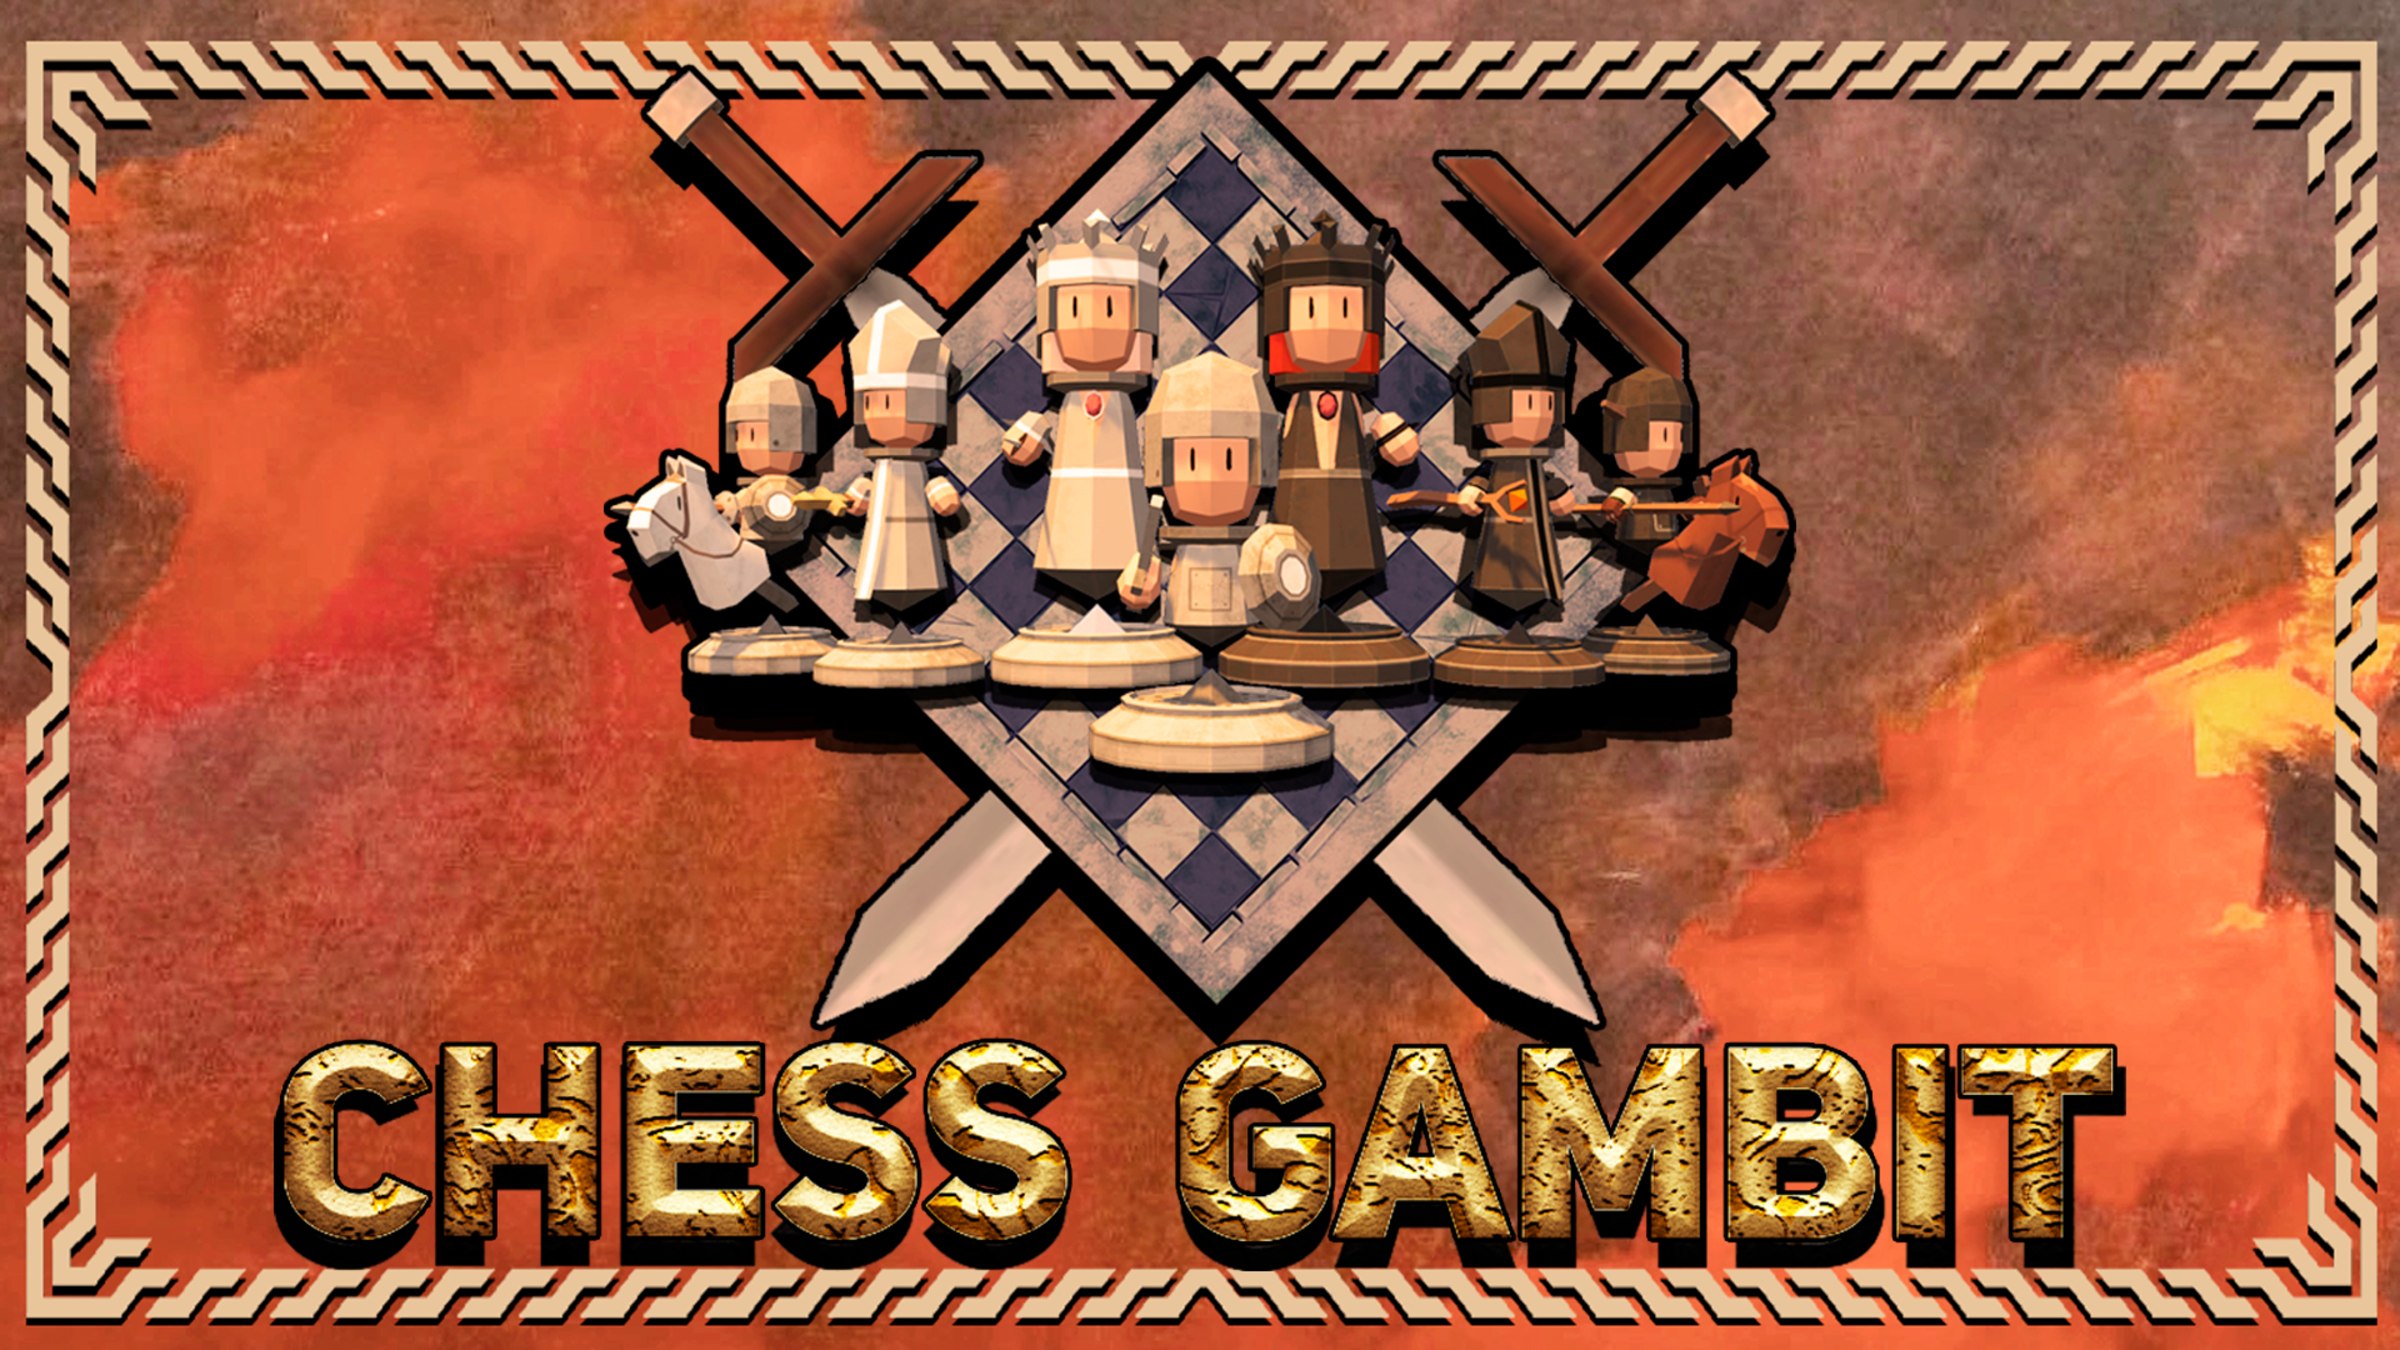 Gambito do Rei Aceito vence em 10 lances #chess #xadrez #game